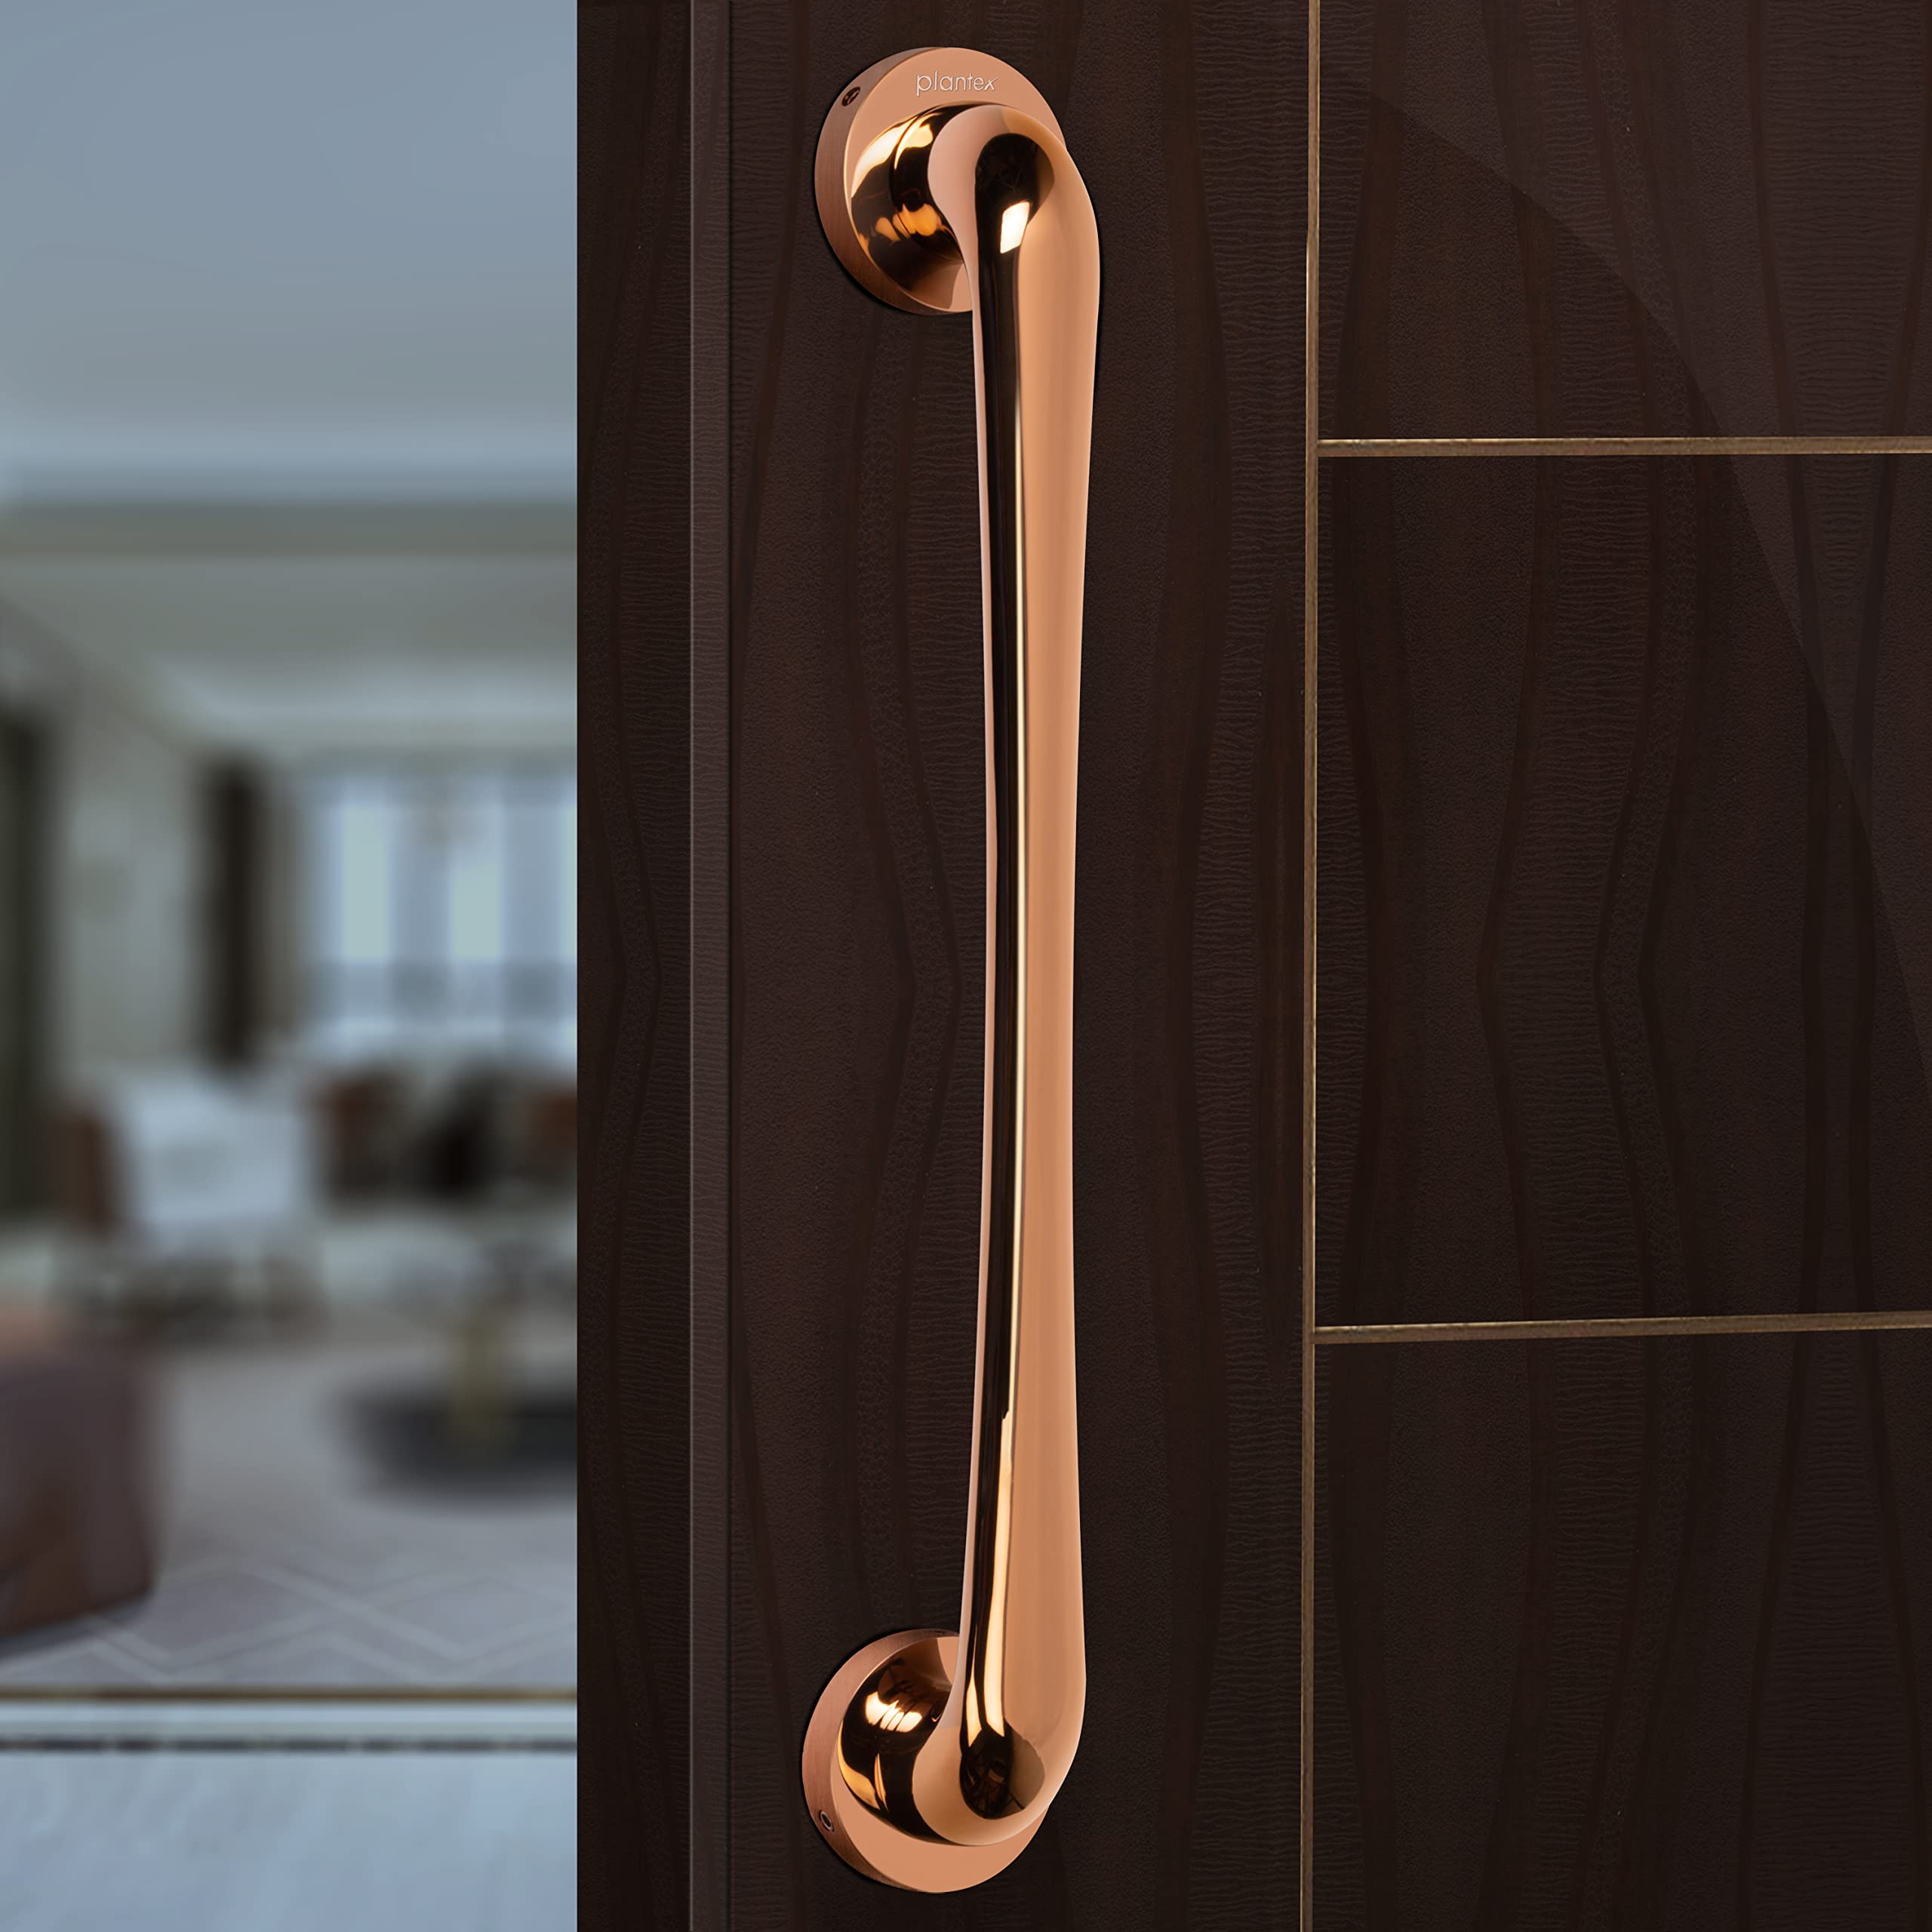 Plantex Polo 14-inch Door Pull-Push Main Door Handle for Wooden Door/House/Hotel/Office Door Hardware (Rose Gold Finish - Long)